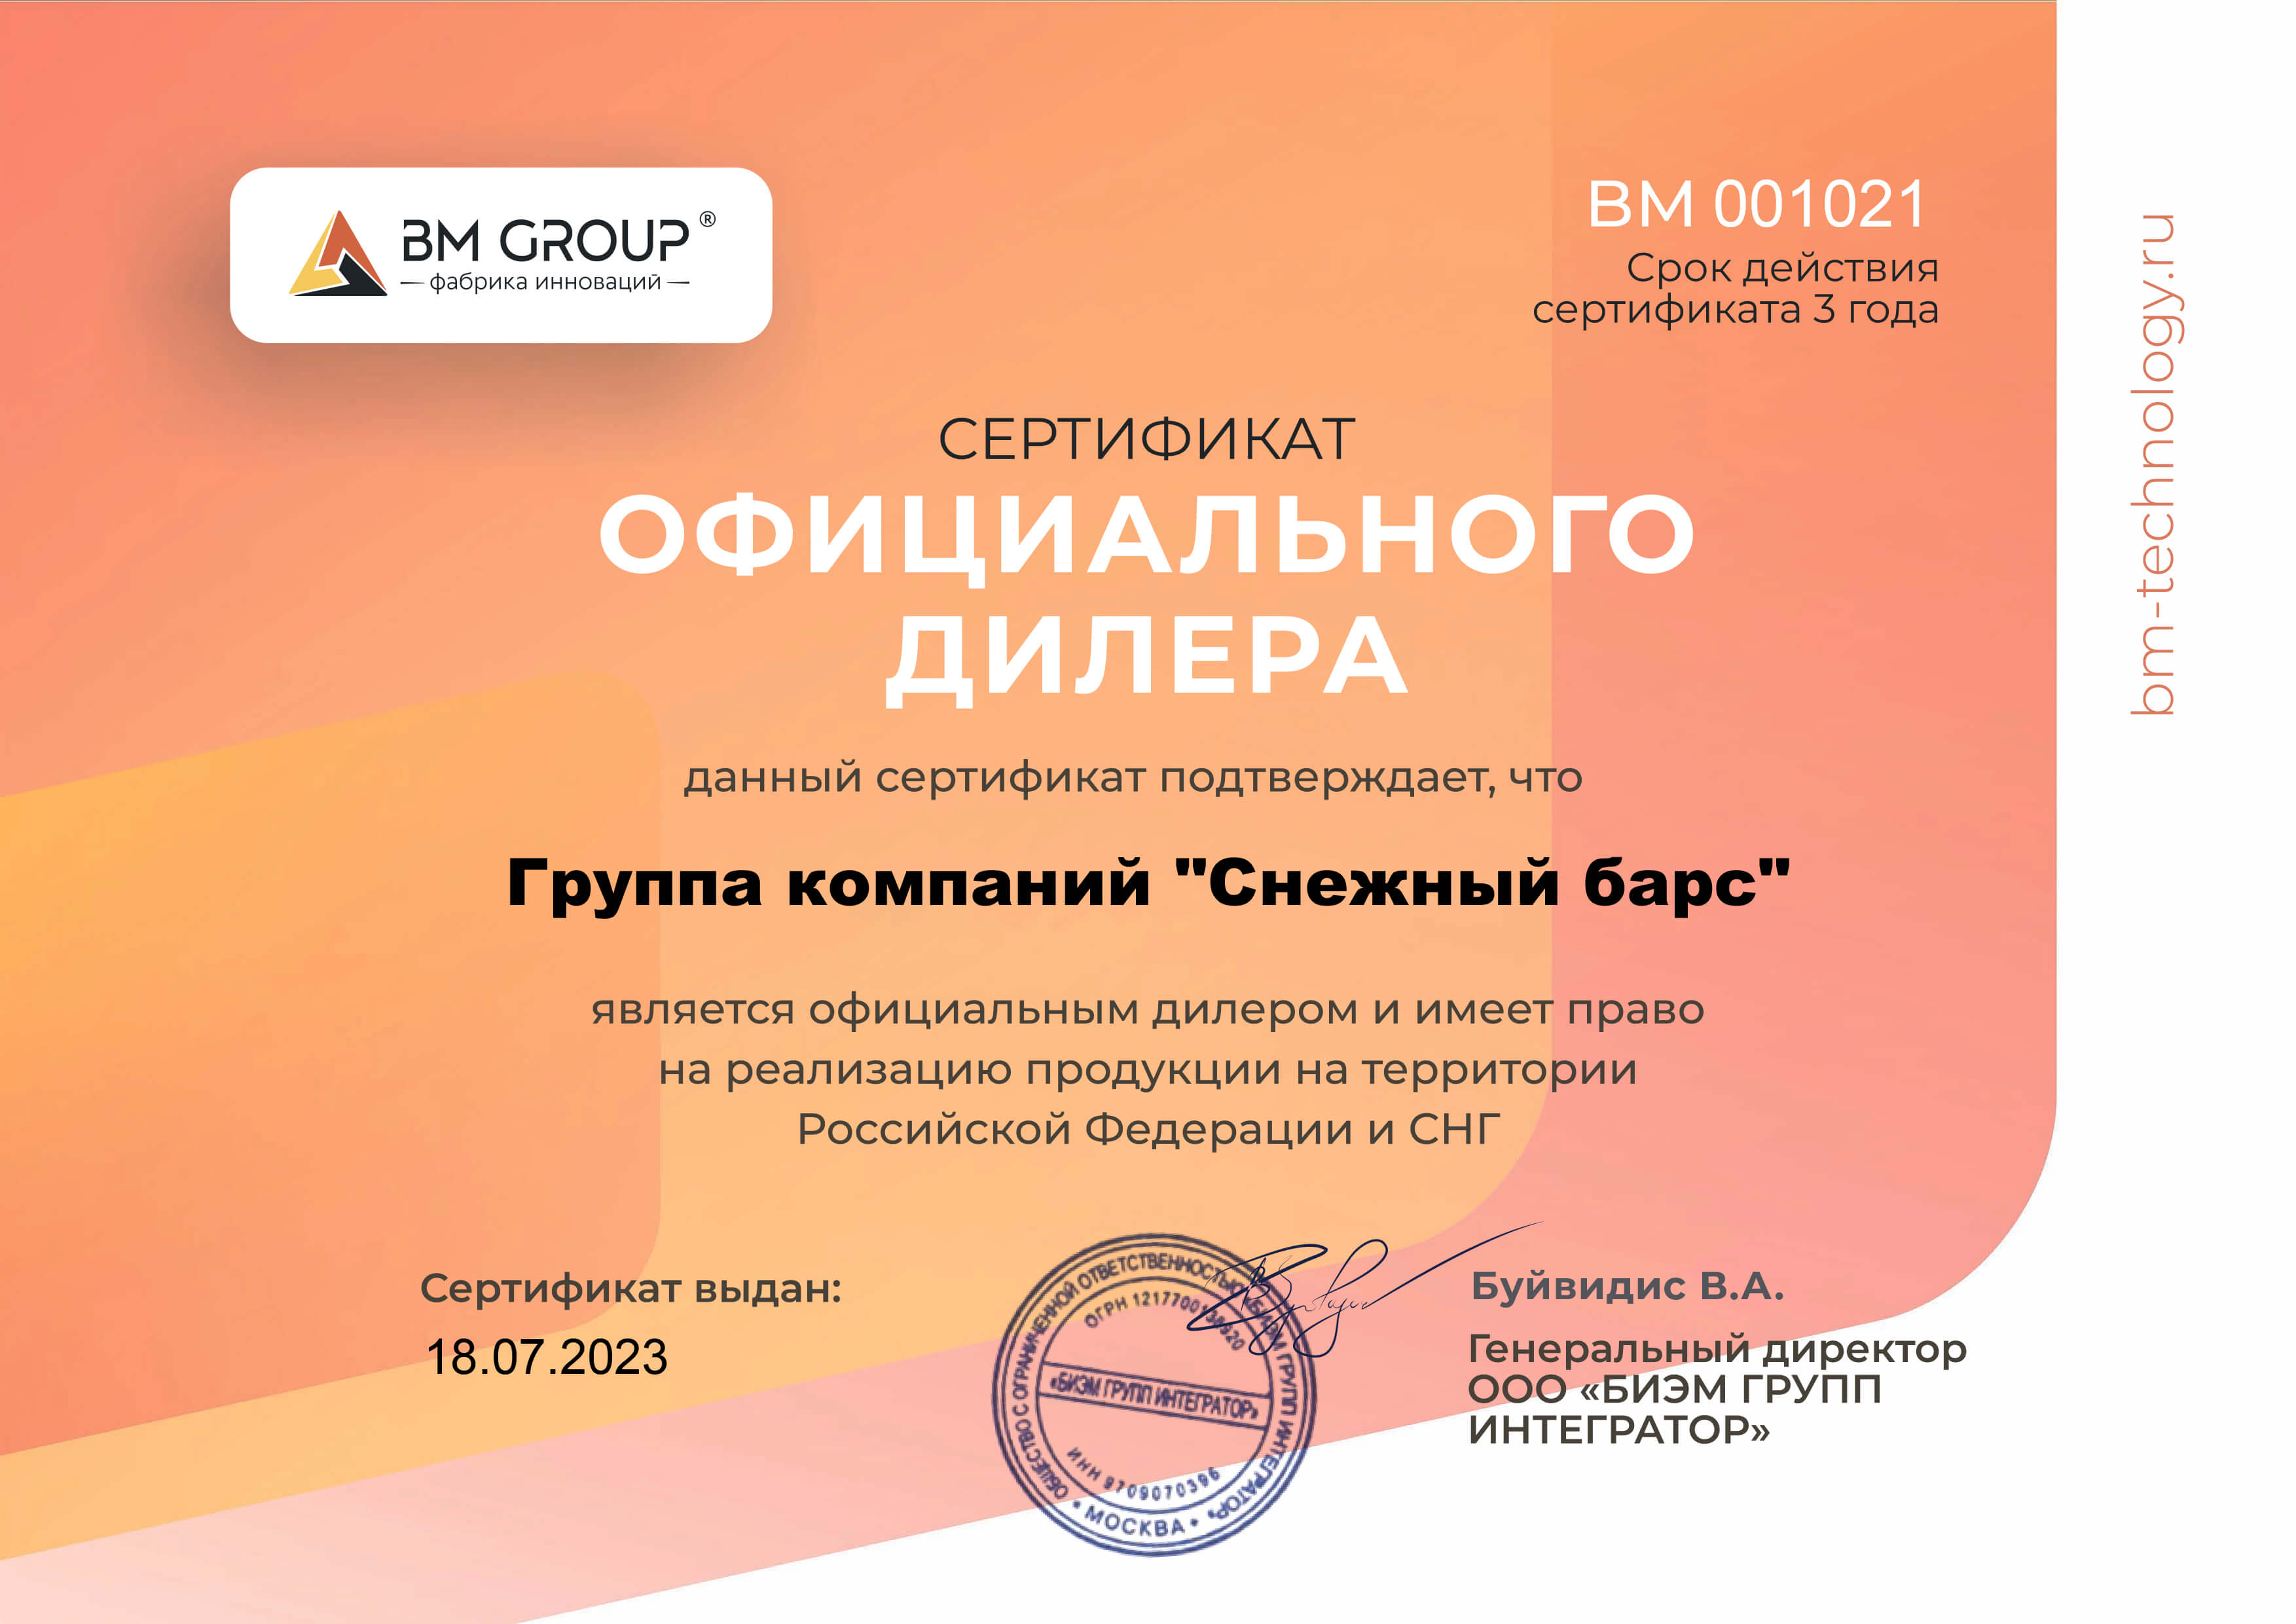 Сертификат официального дилера BM Group